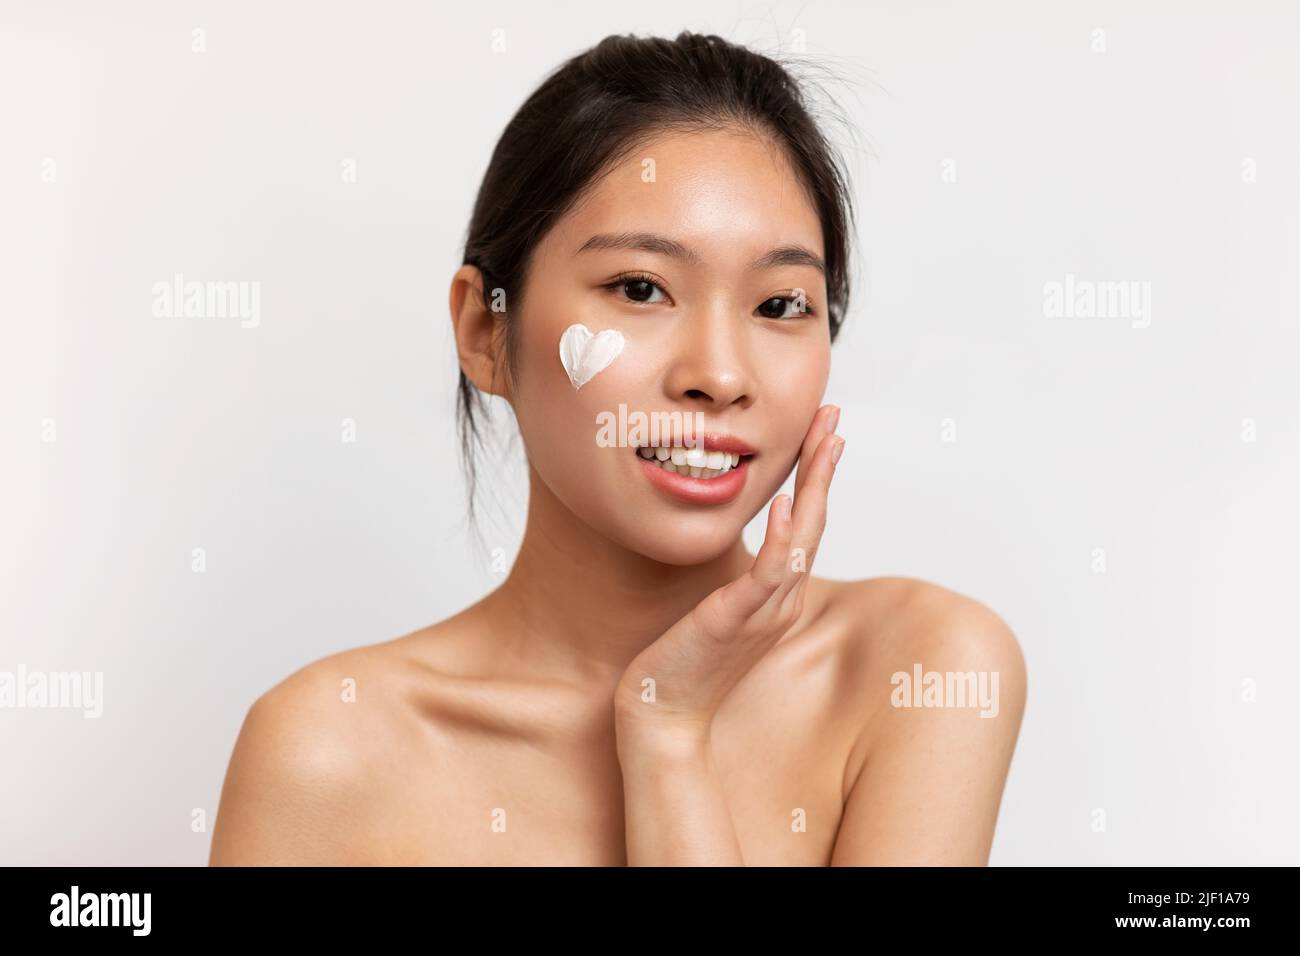 Konzept der Jugendpflege. Junge koreanische Dame mit herzförmiger Feuchtigkeitscreme auf dem Gesicht, die auf weißem Hintergrund posiert Stockfoto